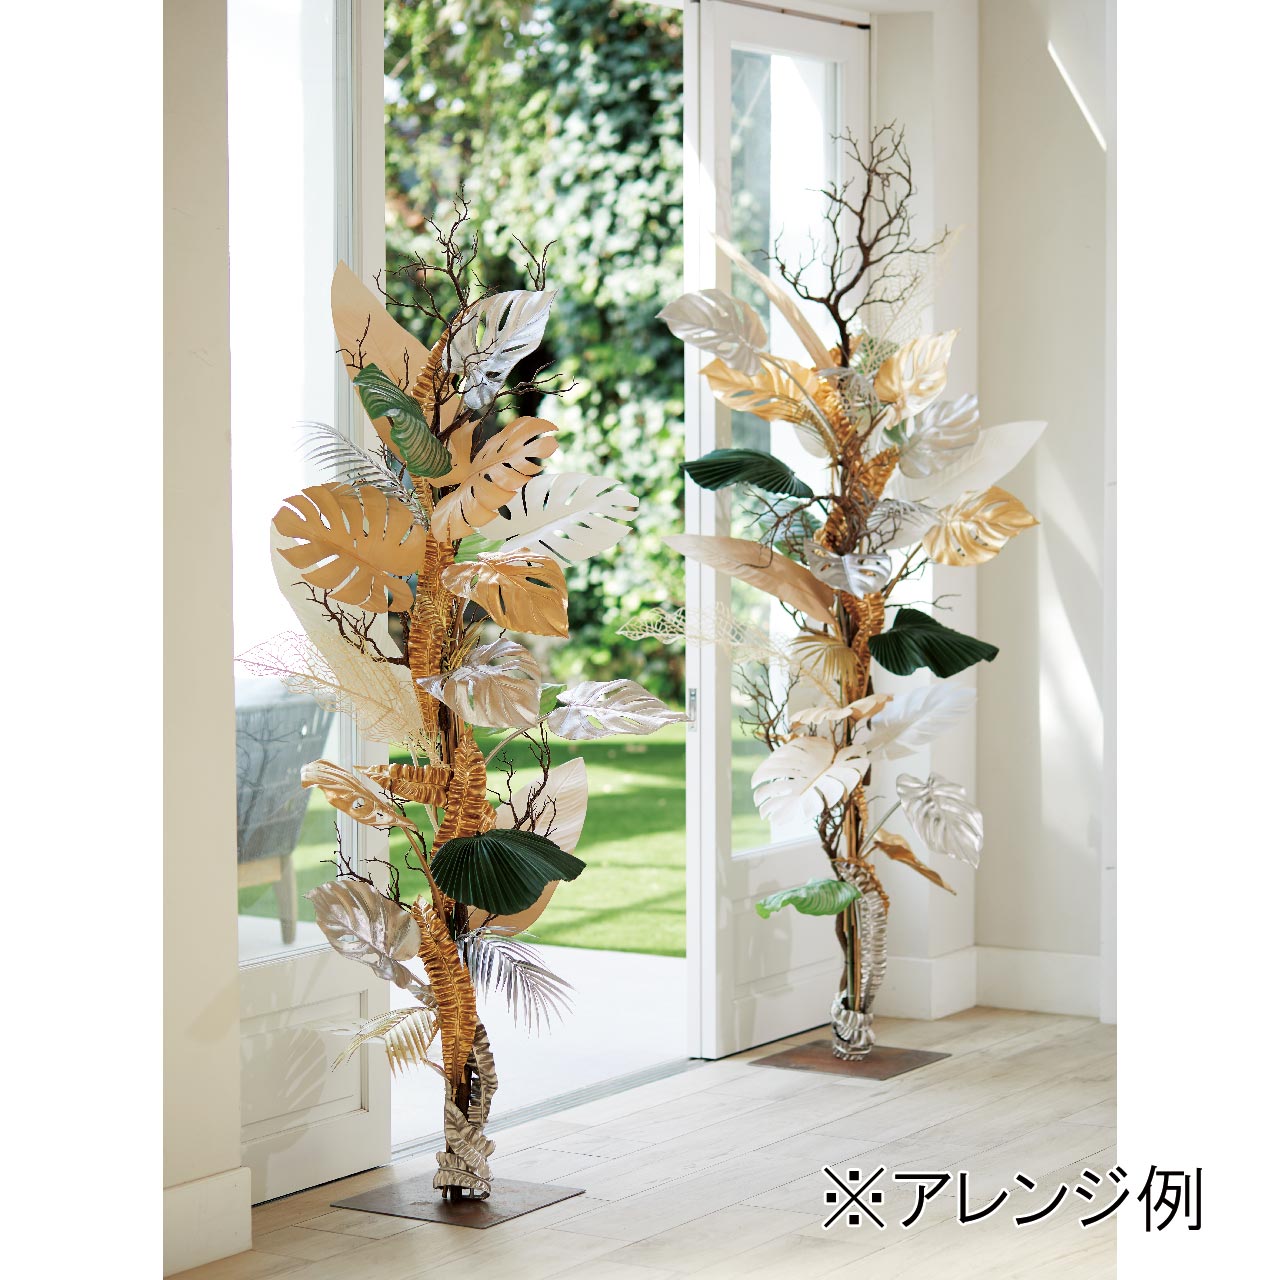 MAGIQ　カフェラカンナリーフ　ホワイト　アーティフィシャルフラワー　造花　FG004365-001　パームリーフ　トロピカルリーフ